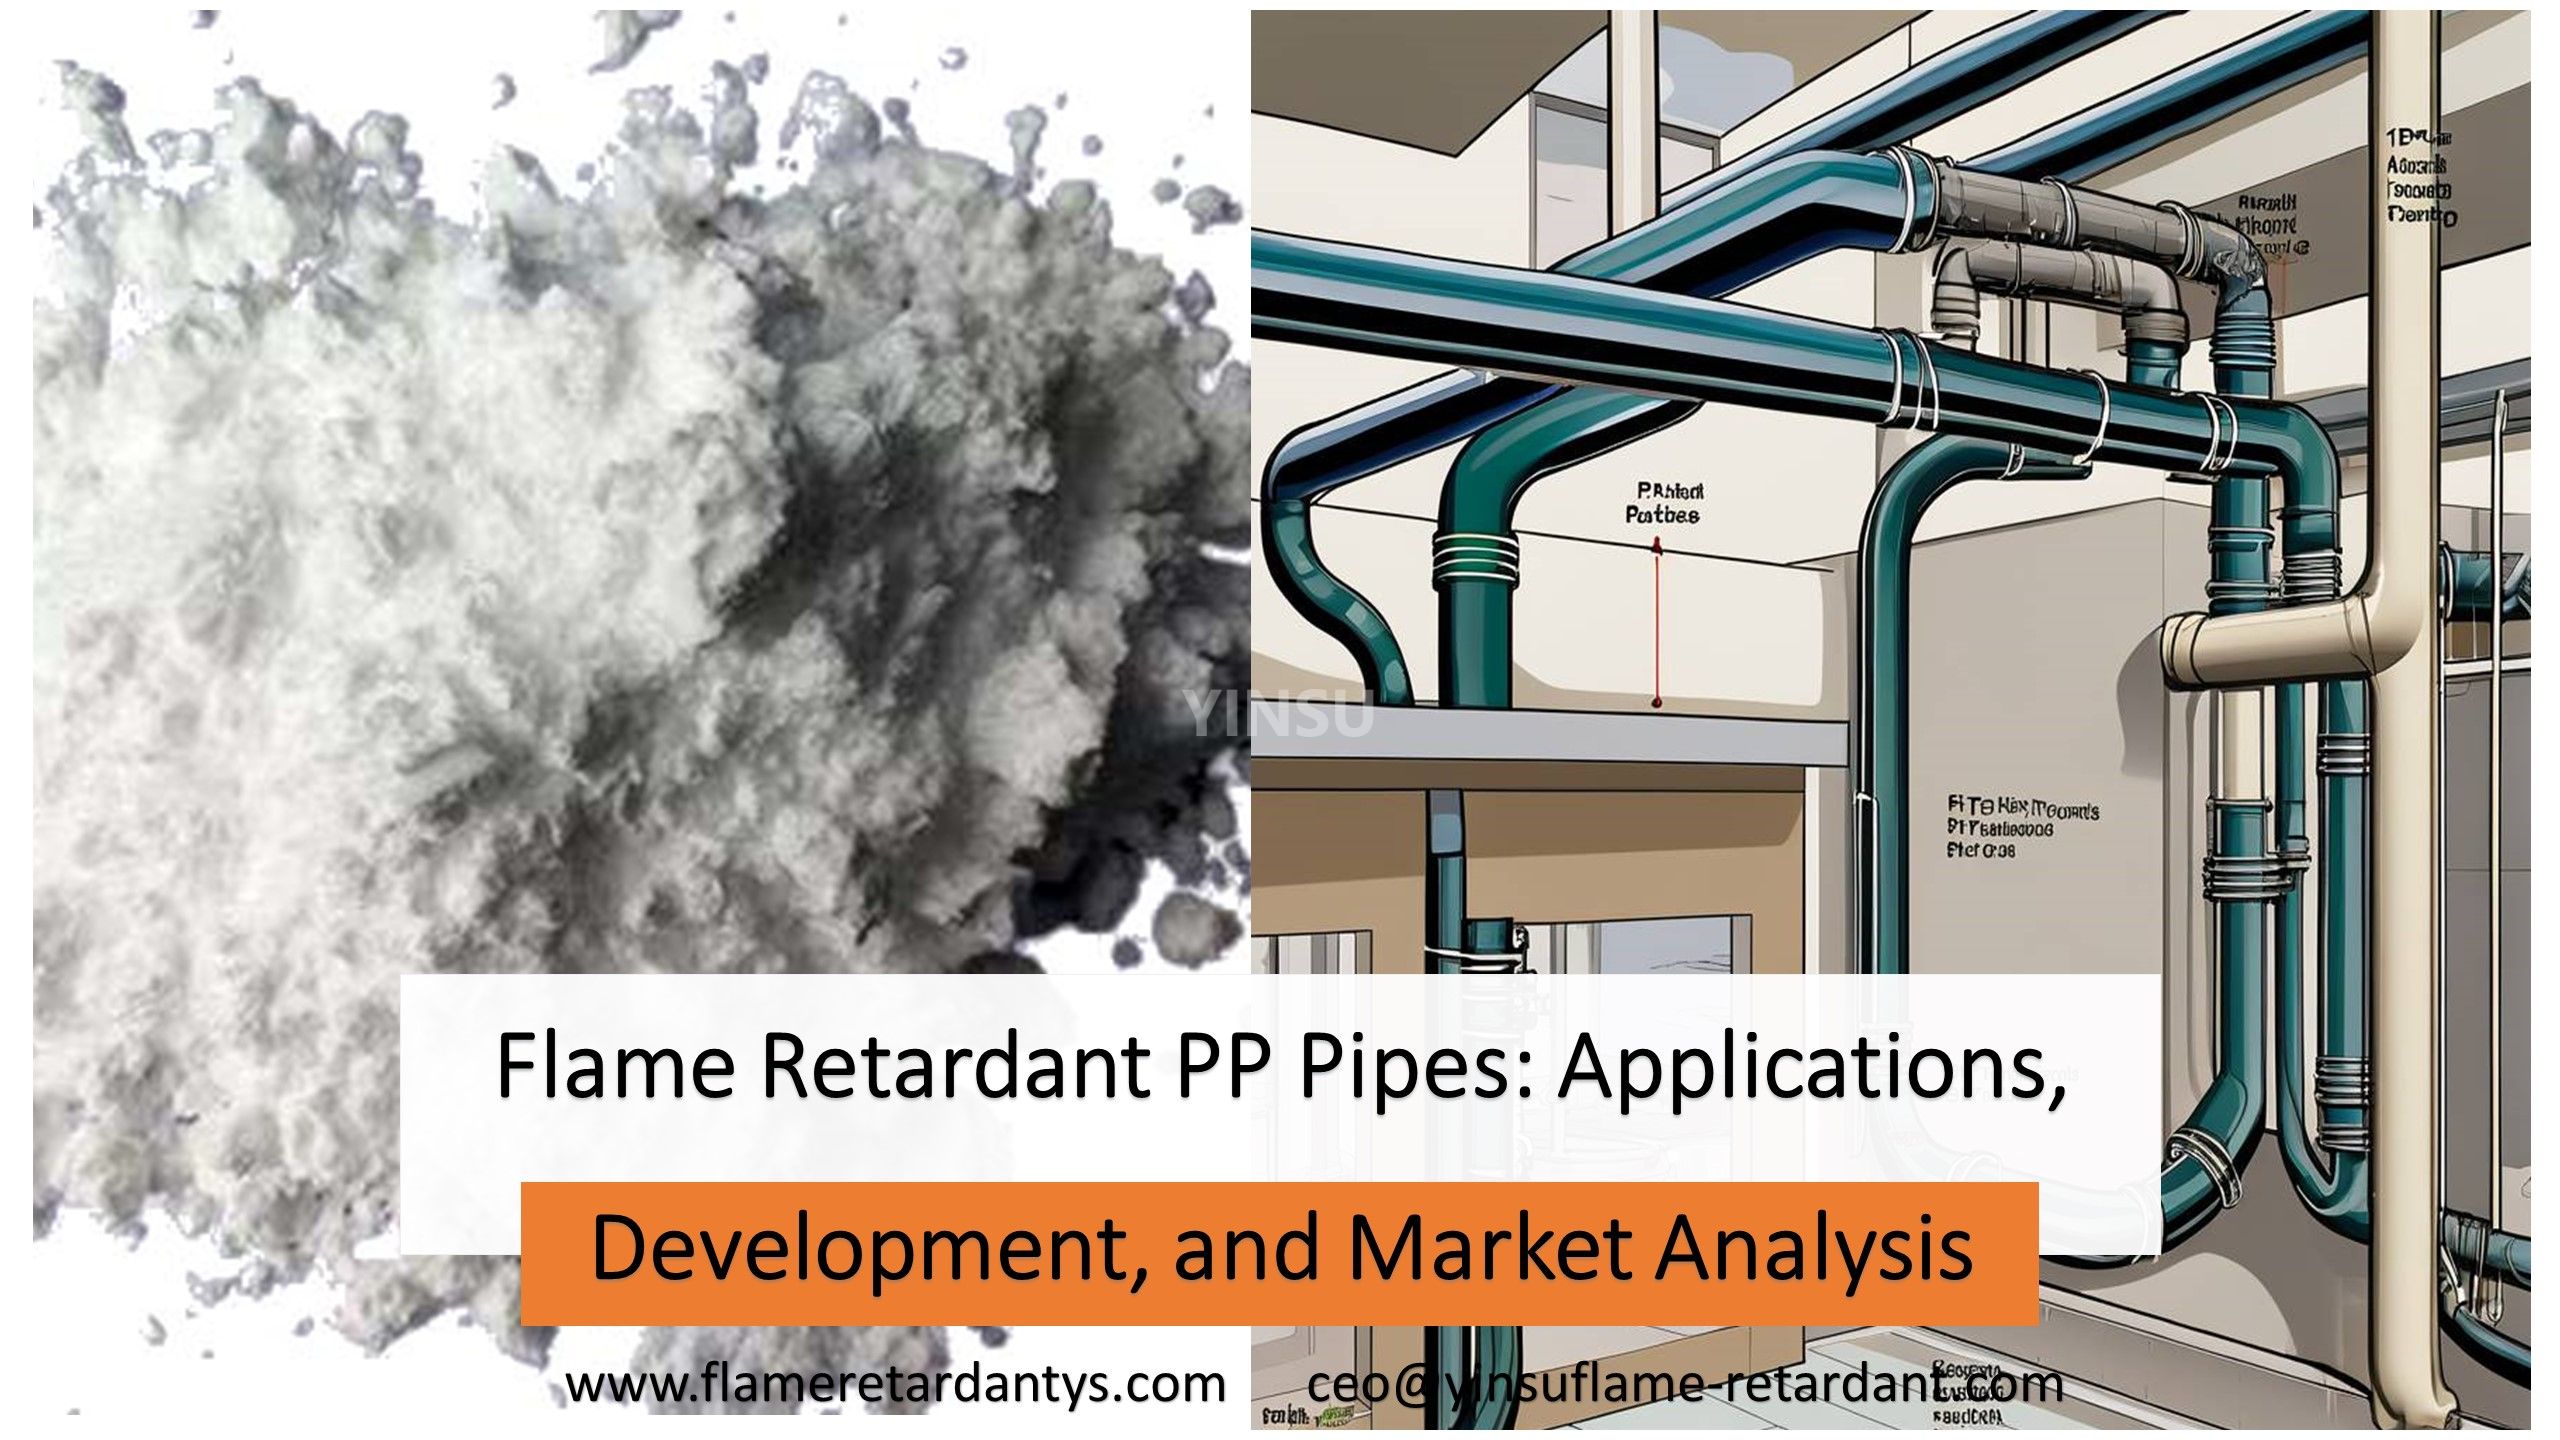 Tuberías de PP retardantes de llama: aplicaciones, desarrollo y análisis de mercado